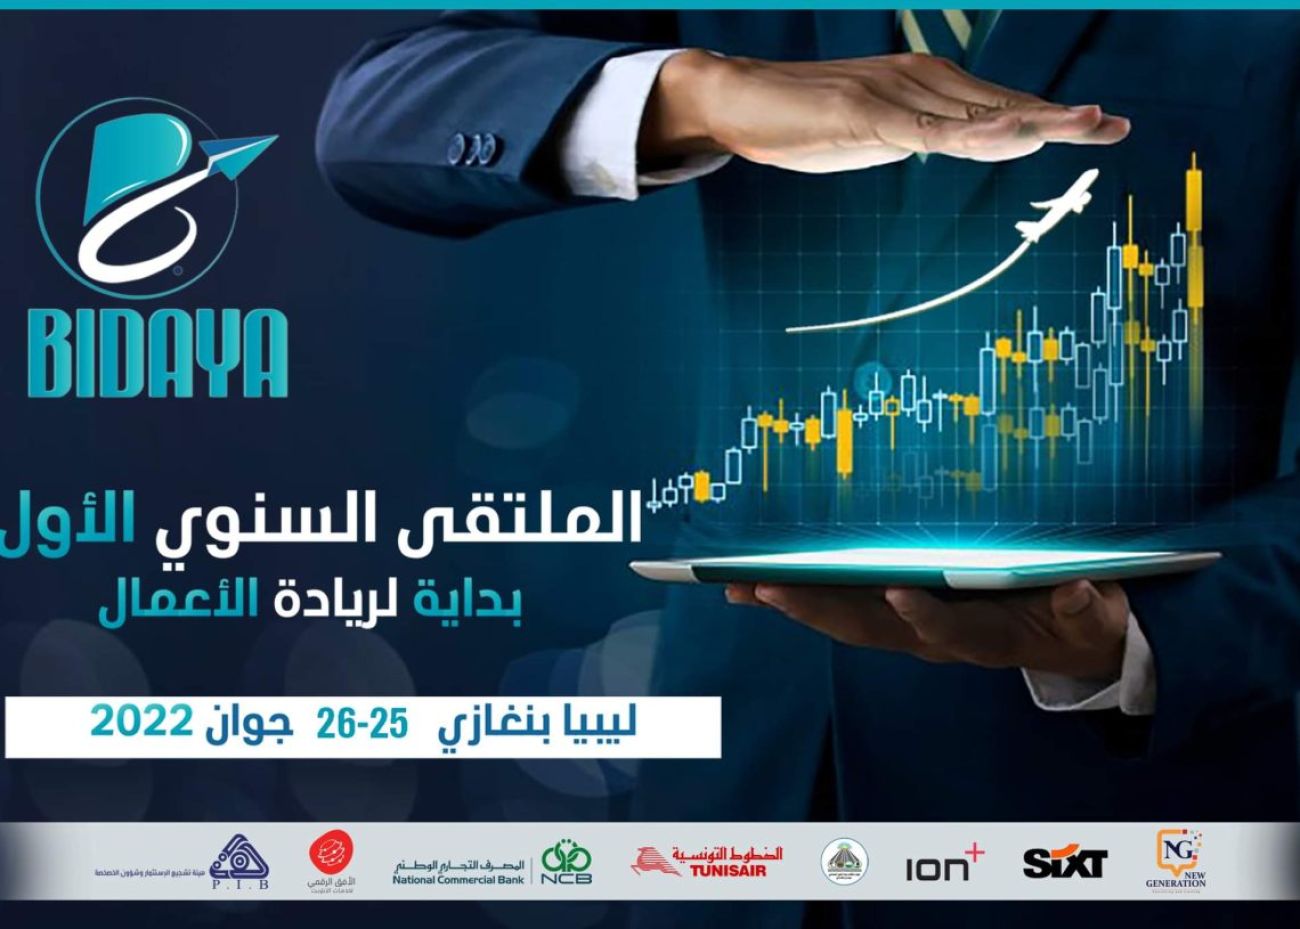 Entrepreneurship-Libya-Tunisia-Forum